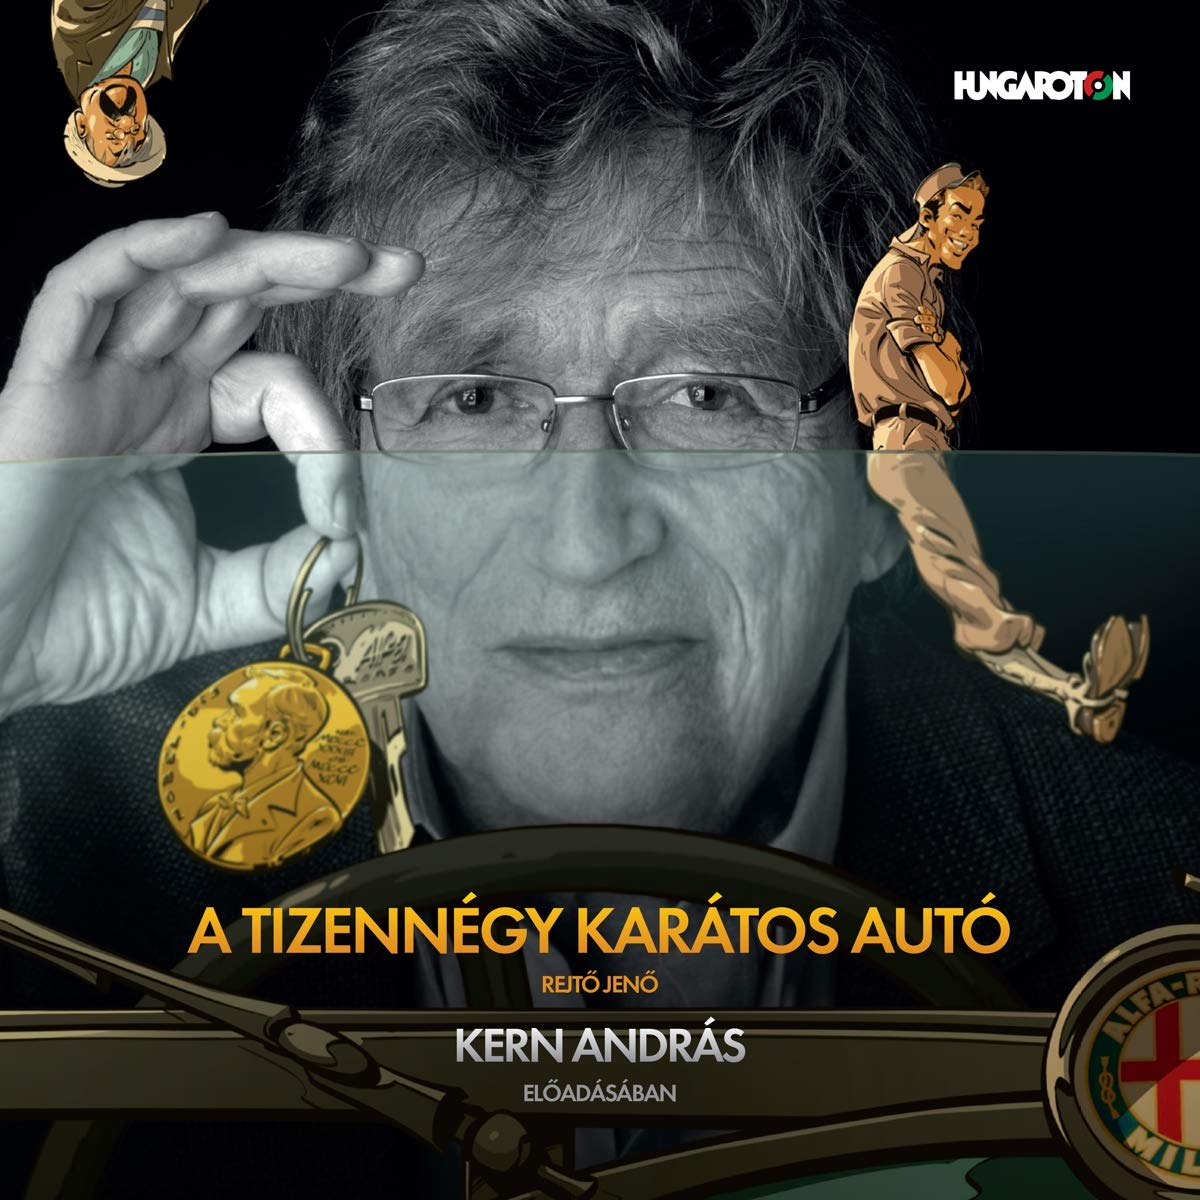 Audiolibro Andras Kern - Tizennegy Karatos Auto NUOVO SIGILLATO, EDIZIONE DEL 08/12/2020 SUBITO DISPONIBILE